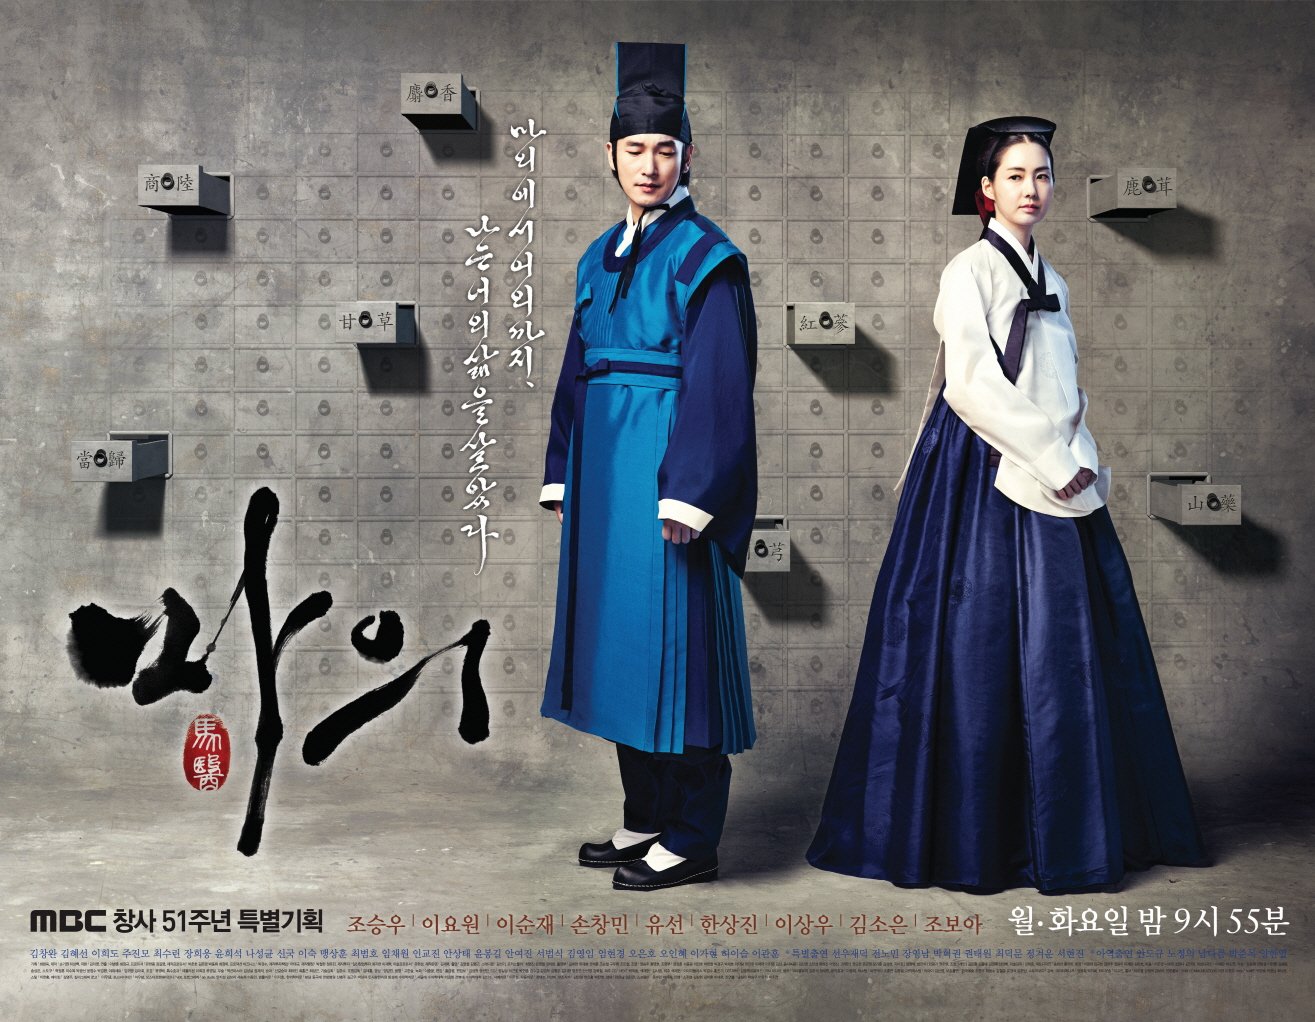 Phim truyền hình hay nhất của Cho (Jo) Seung Woo